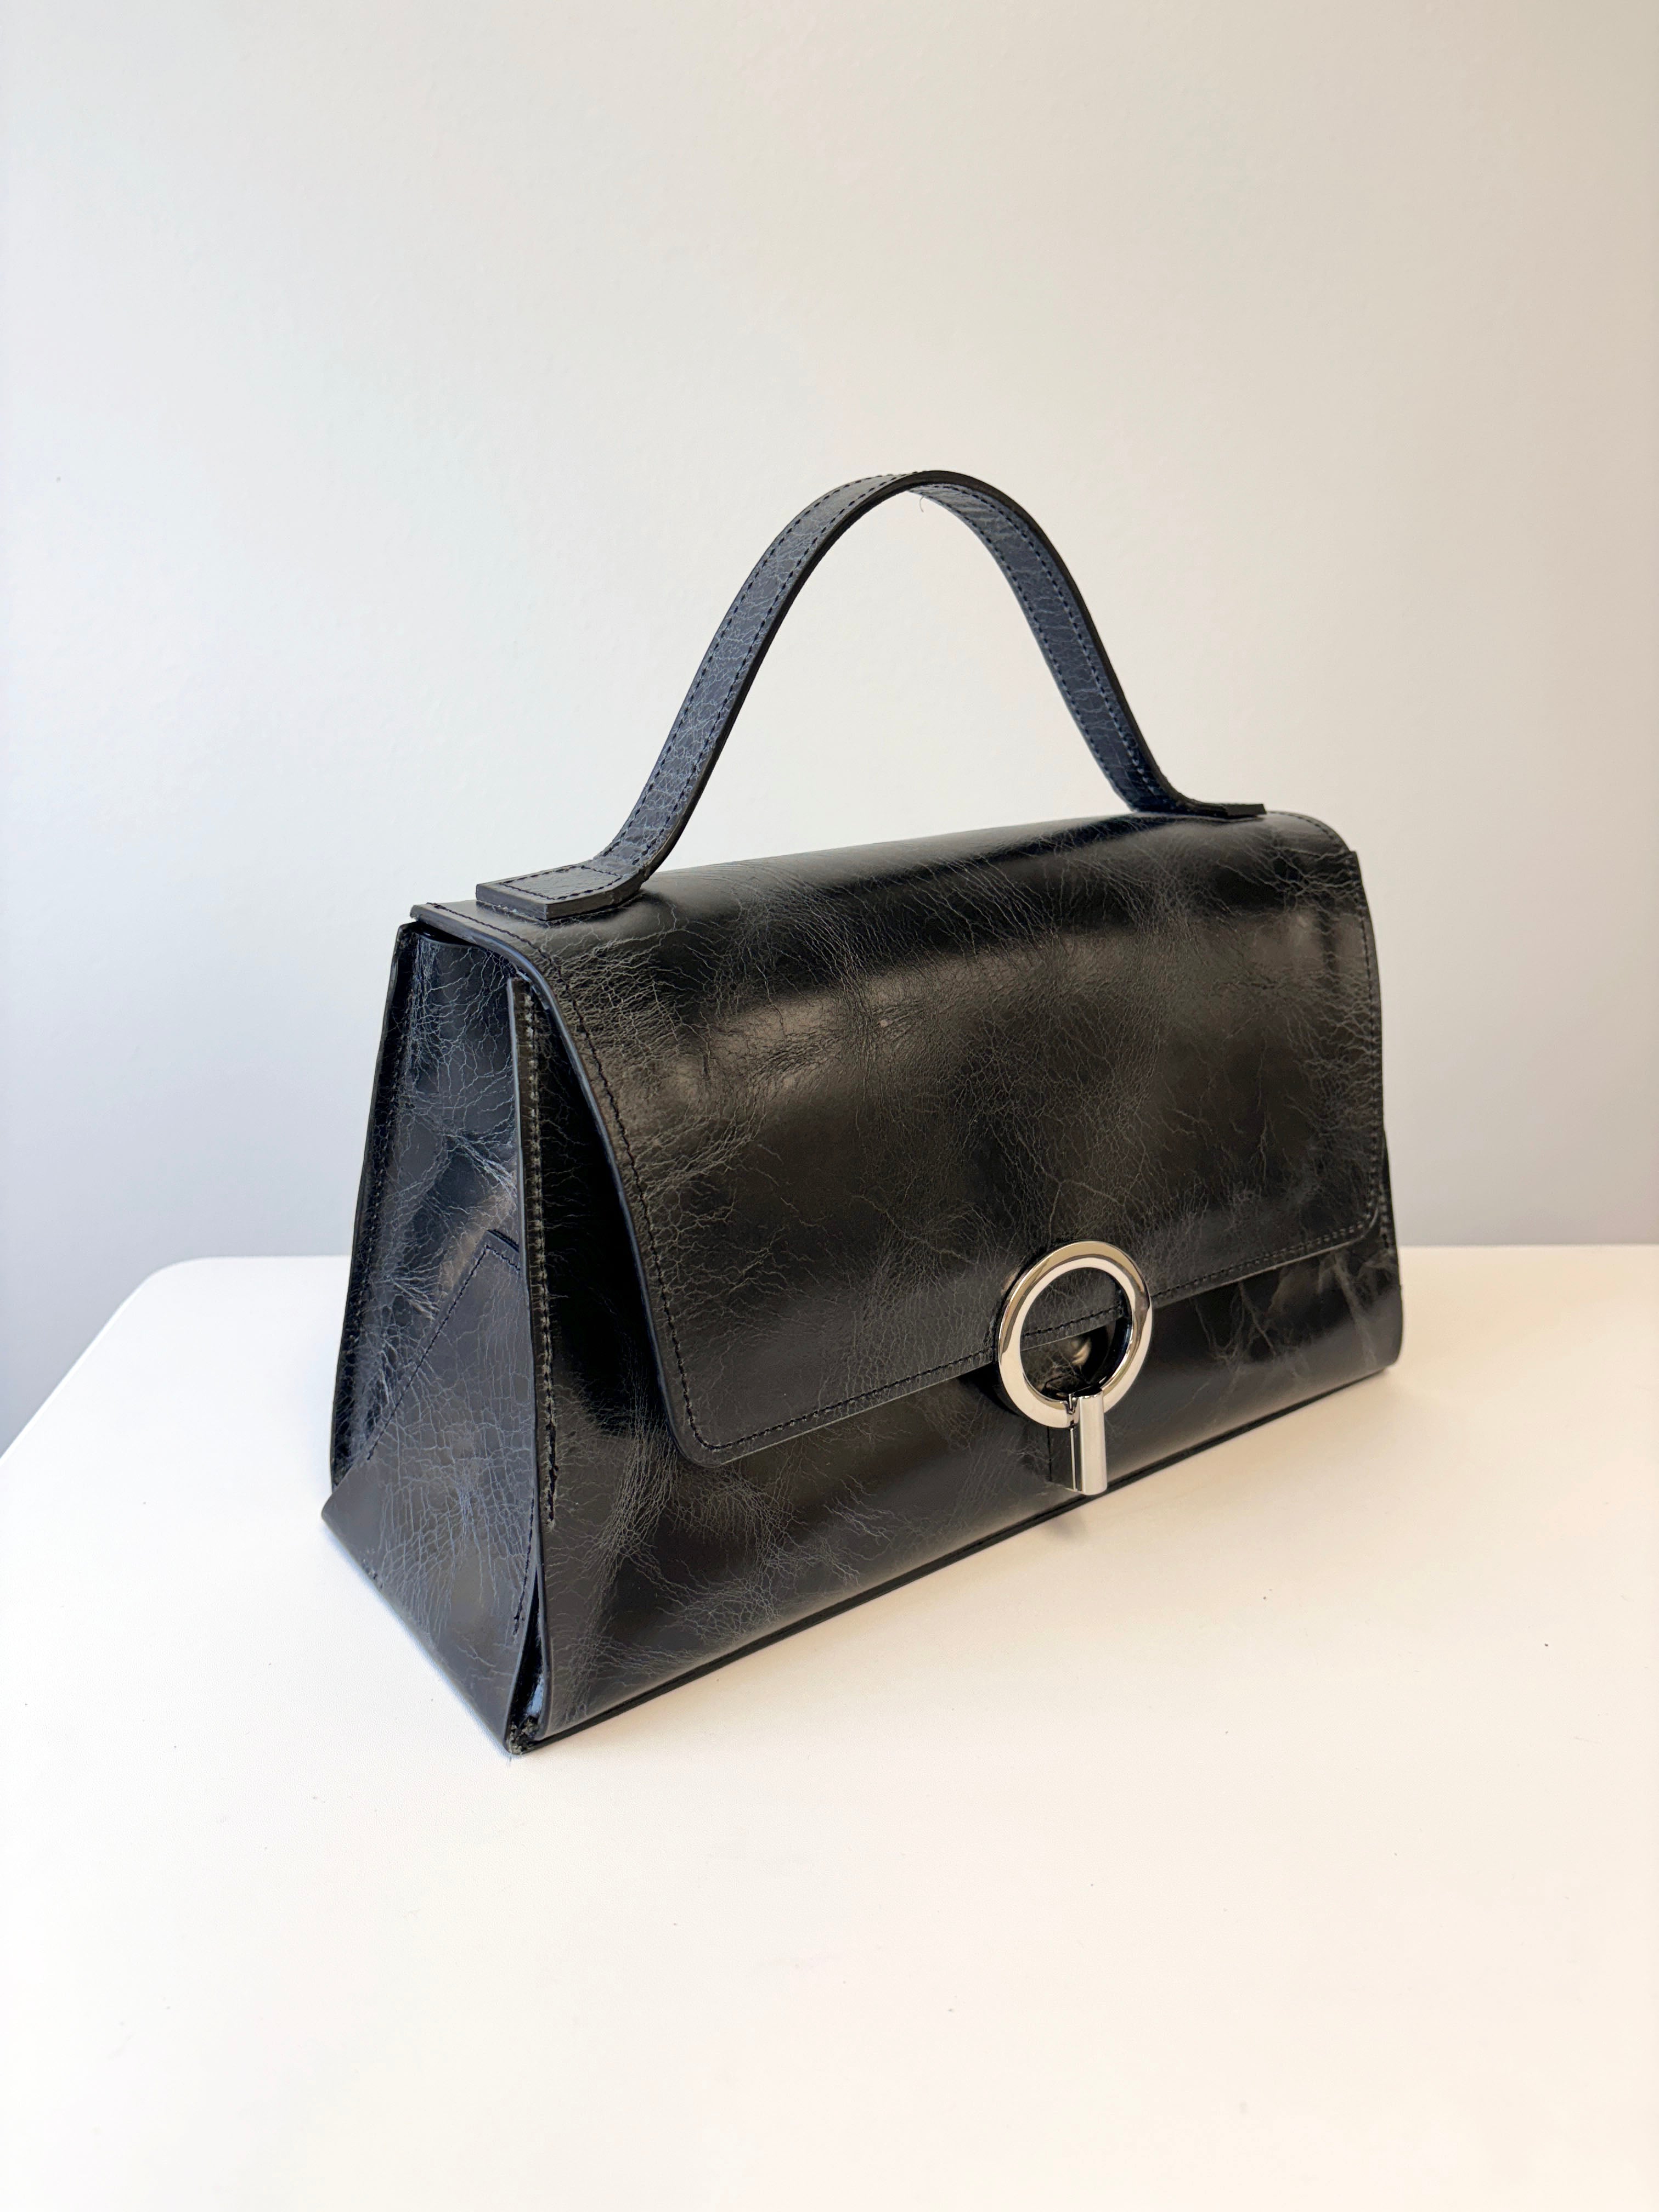 Studyus Ring Handbag in black